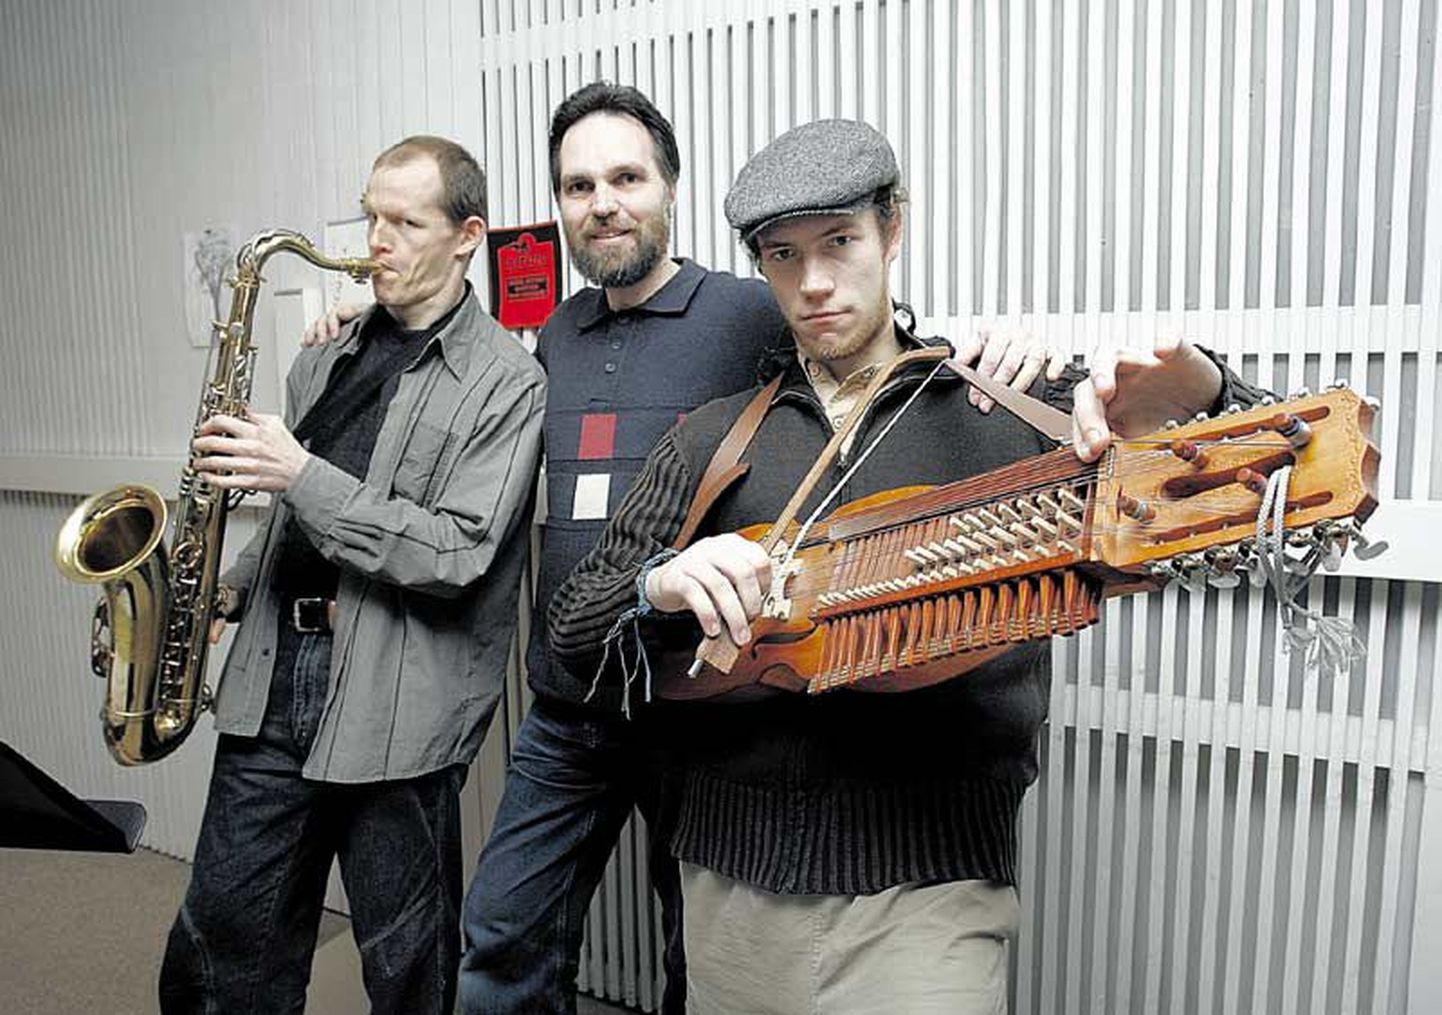 Saksofonist Raul Sööt (vasakult), Margo Kõlar ja nükkelharfimängija Janno Pokk tegid Eesti Muusika- ja Teatriakadeemia elektronmuusikastuudios ettevalmistusi uudisteose esiettekandeks ning fotograafile veidi koomuskit ka.